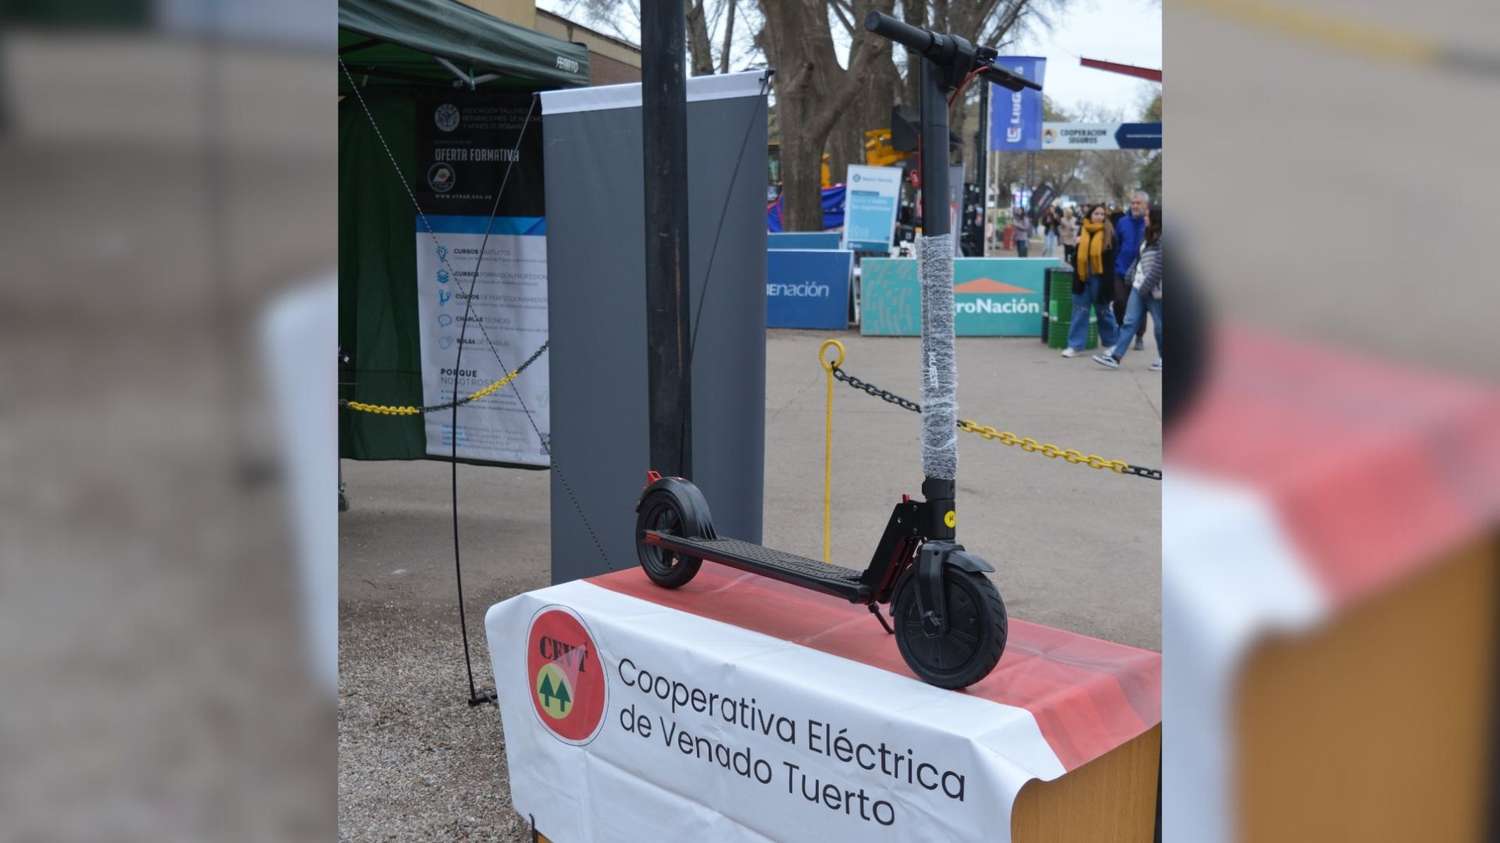 La Cooperativa Eléctrica sorteará un scooter eléctrico